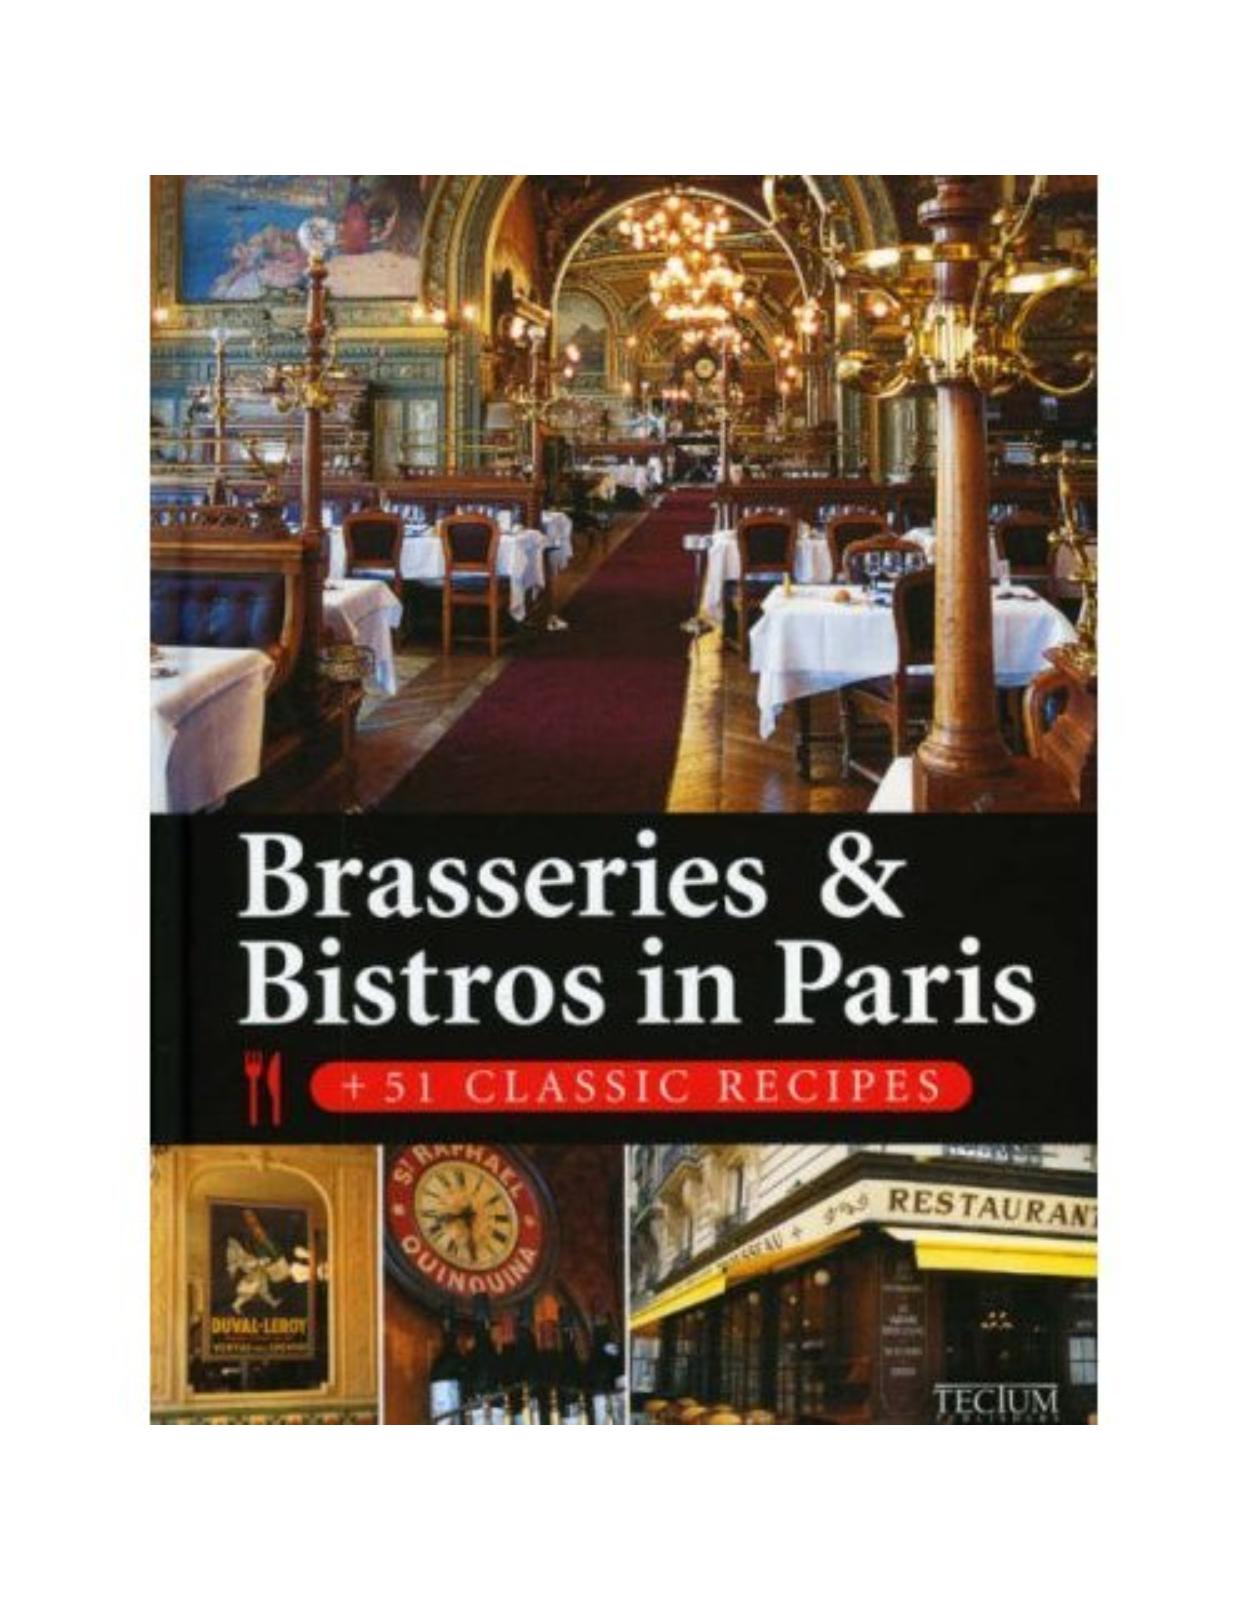 Brasseries & Bistros in Paris